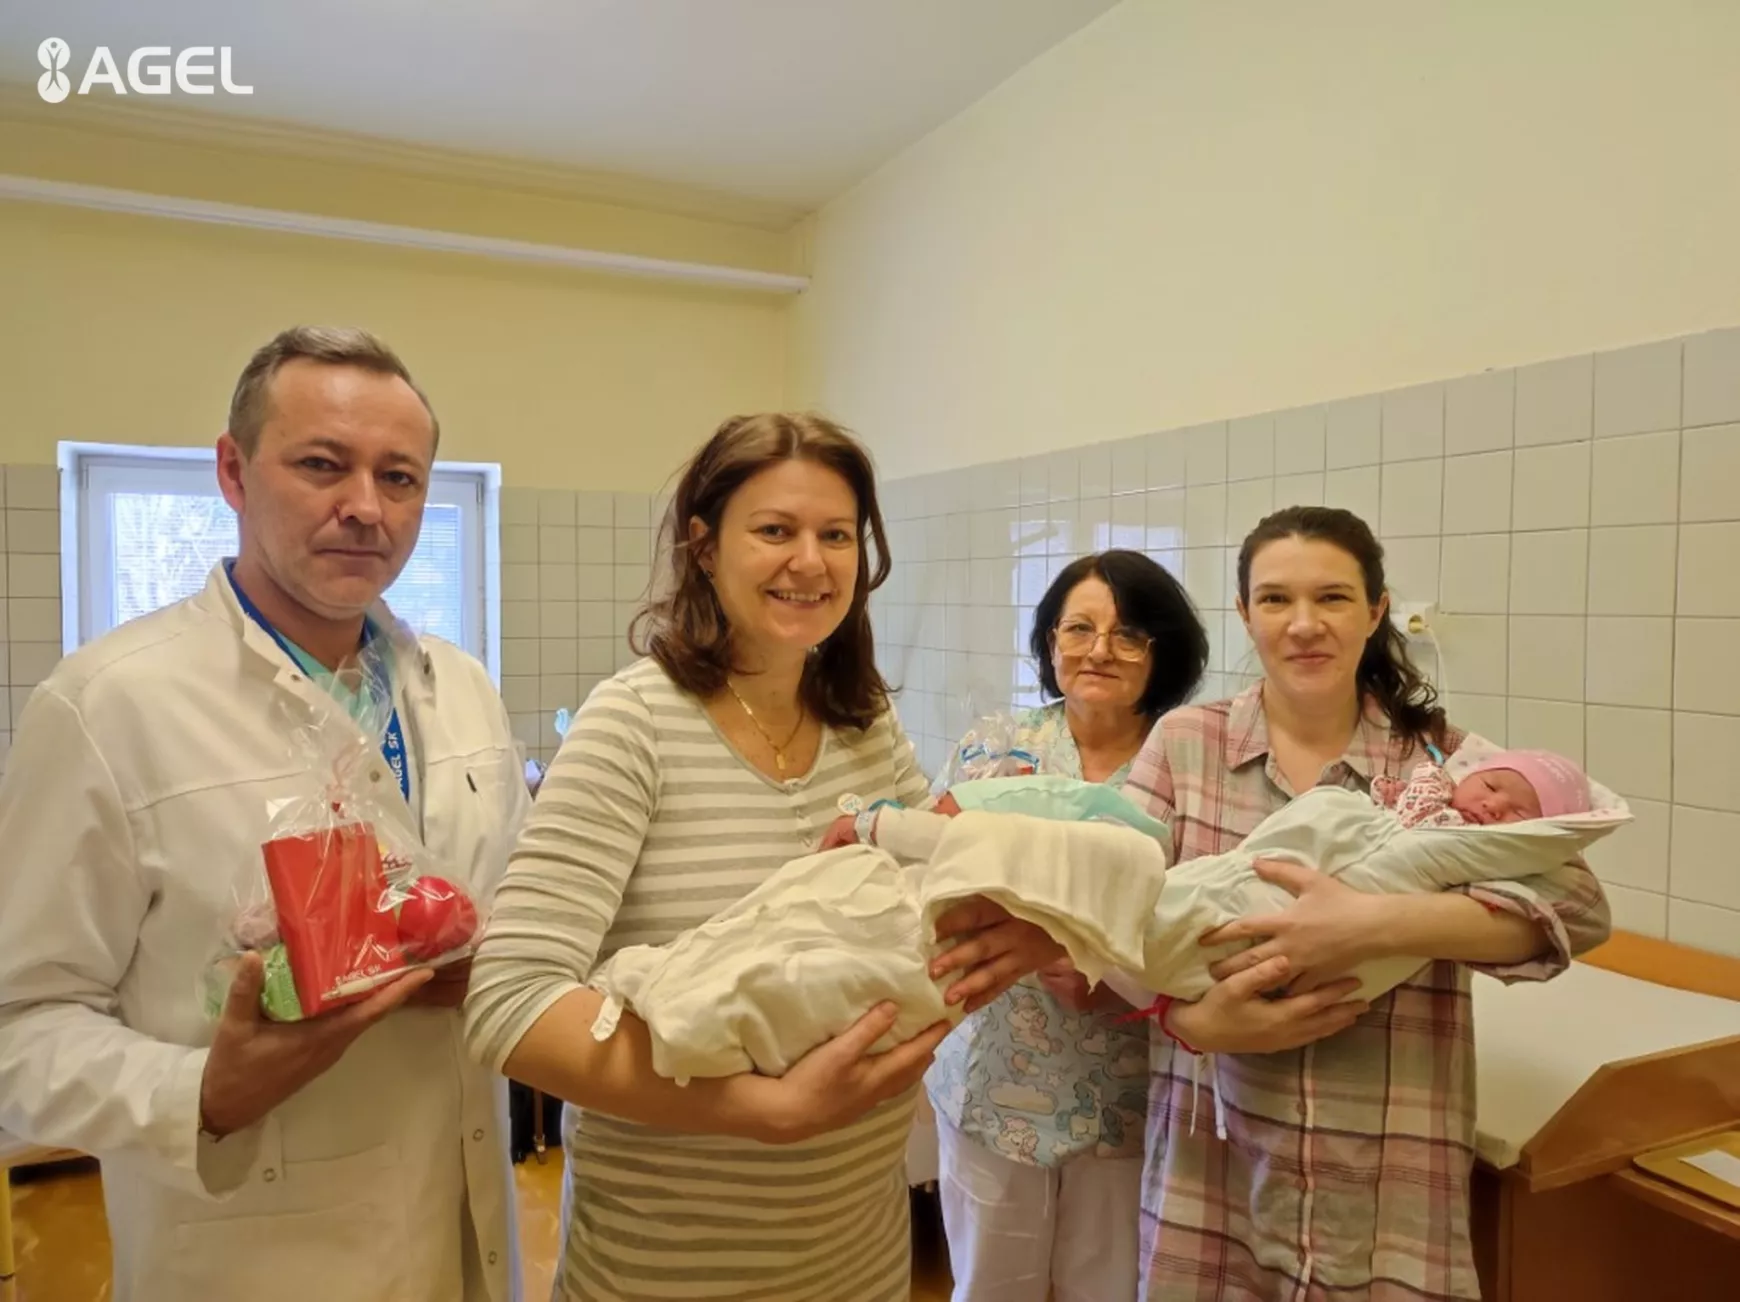  Az idei mágikus időpontban újabb négy baba született a komáromi kórházban